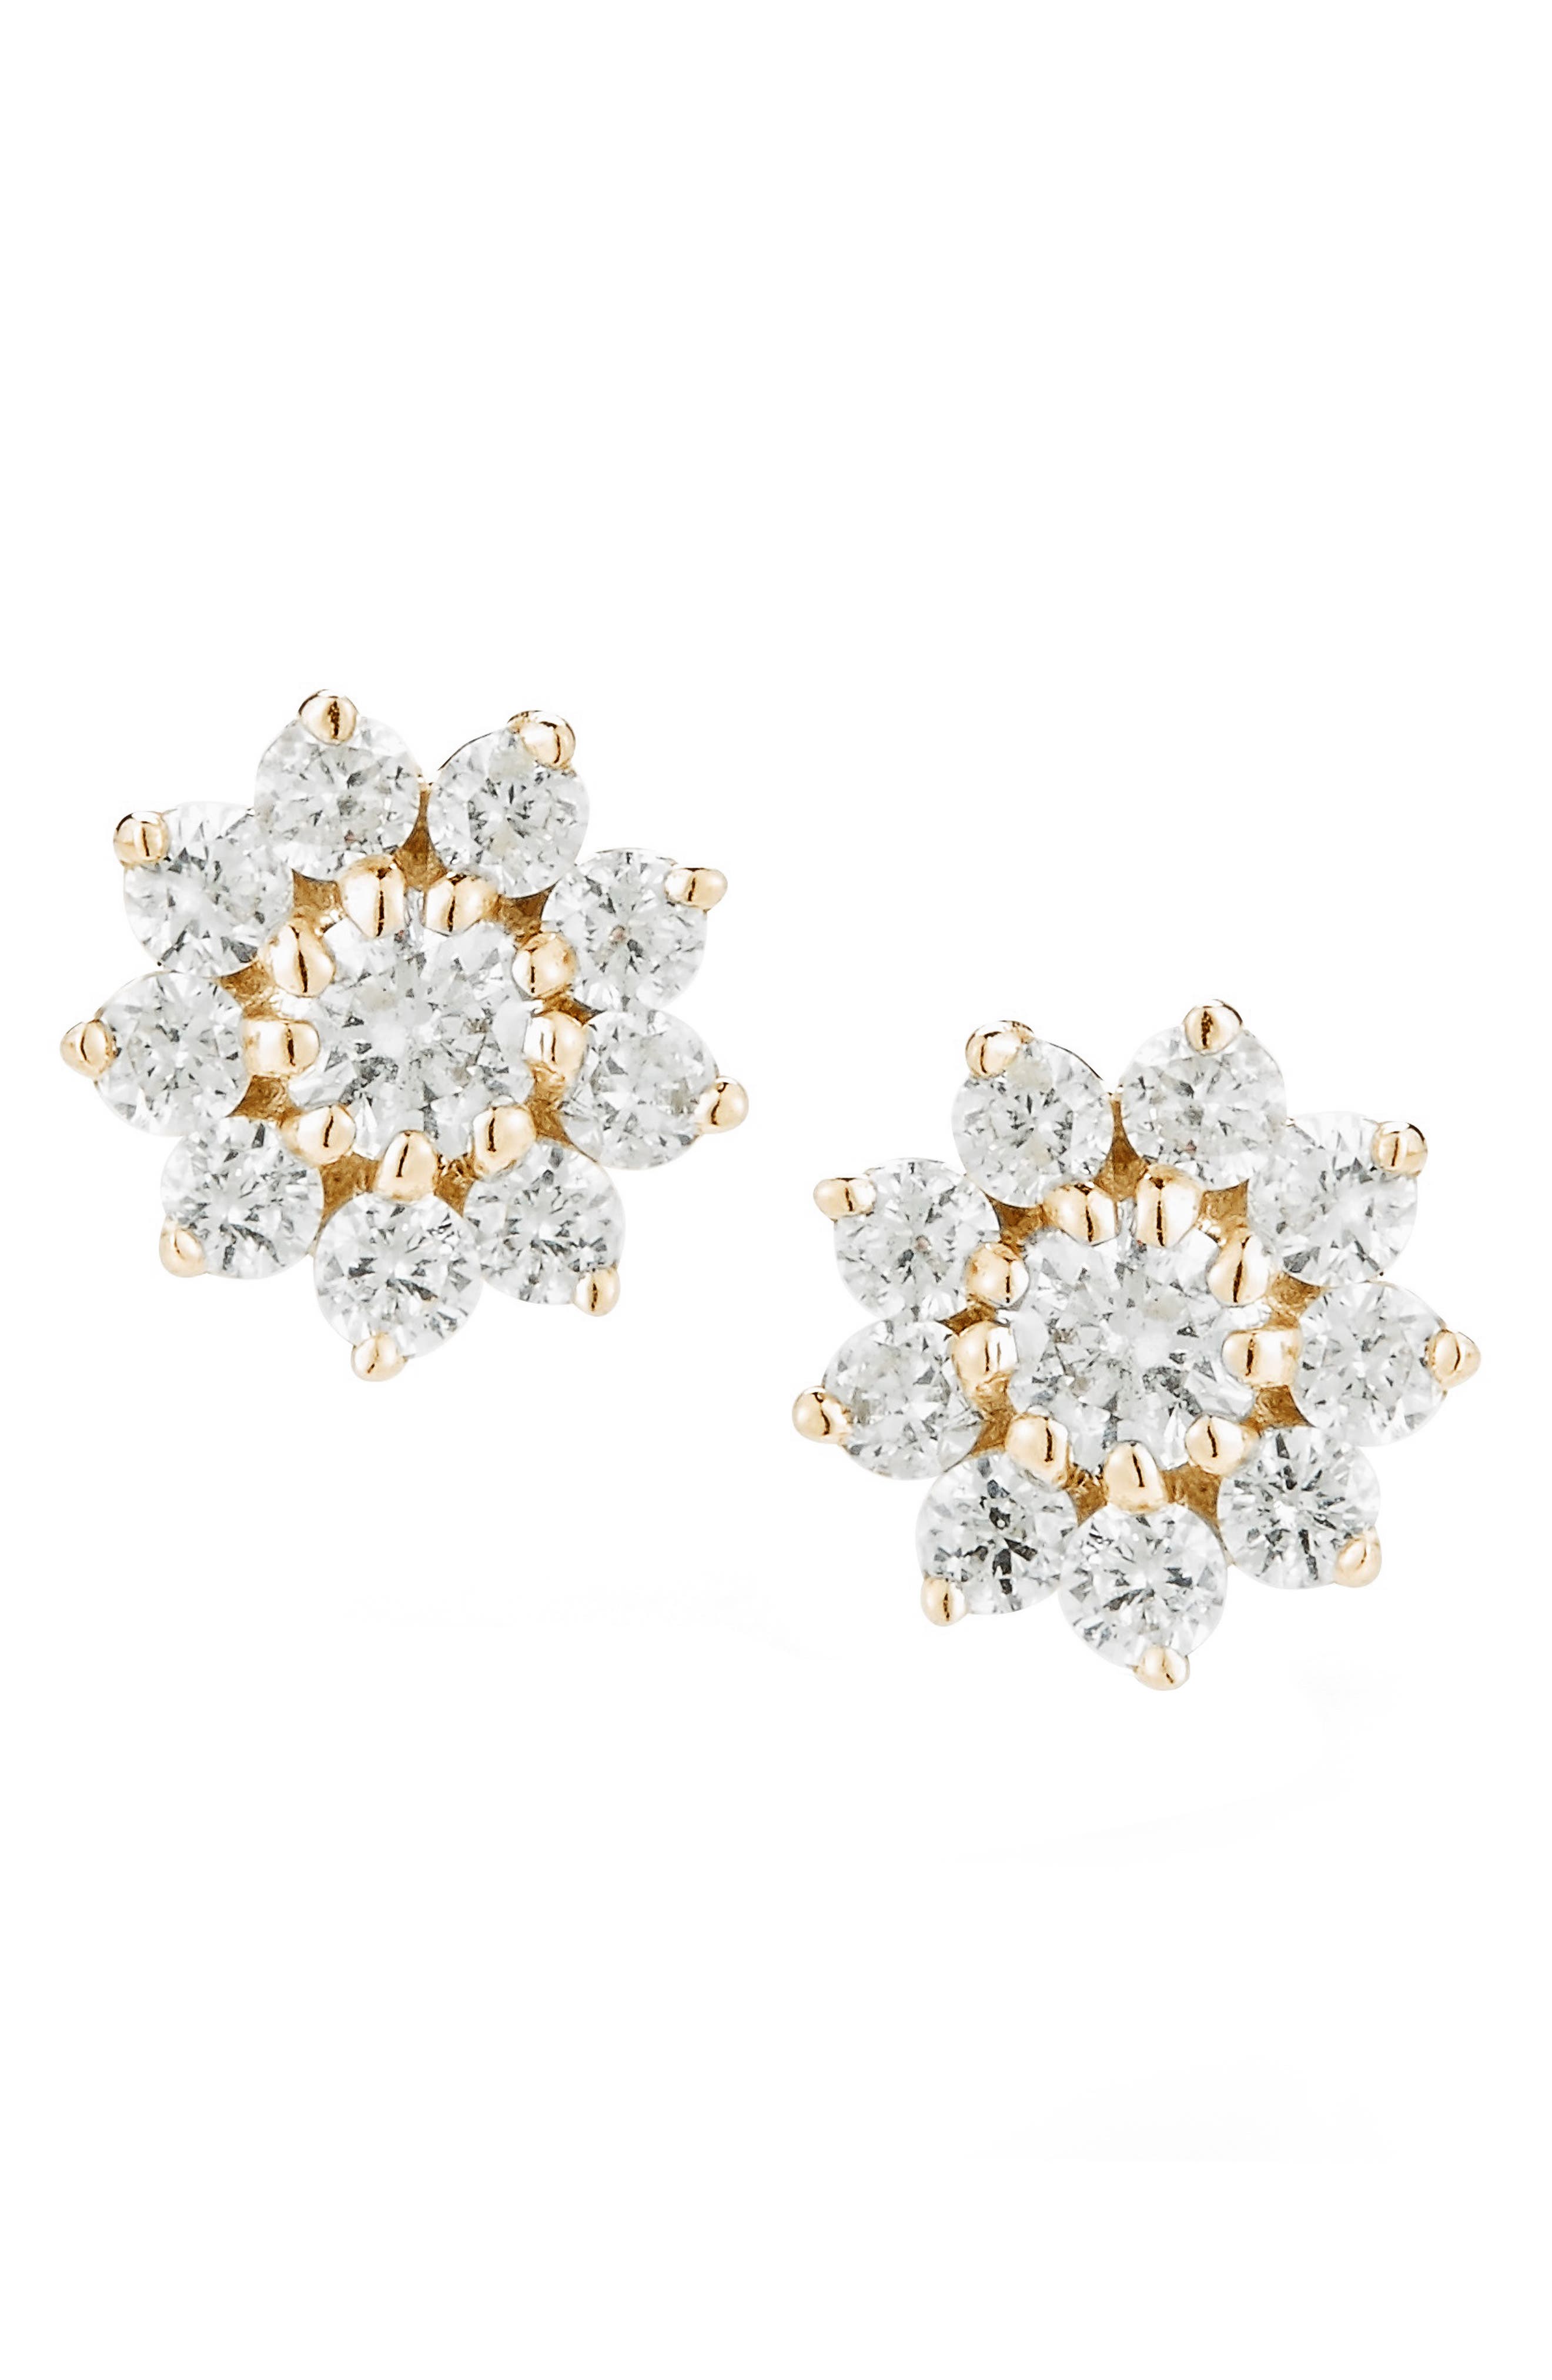 Dana Rebecca Designs Jennifer Y Pointed Flower Diamond Stud Earrings in Yellow Gold